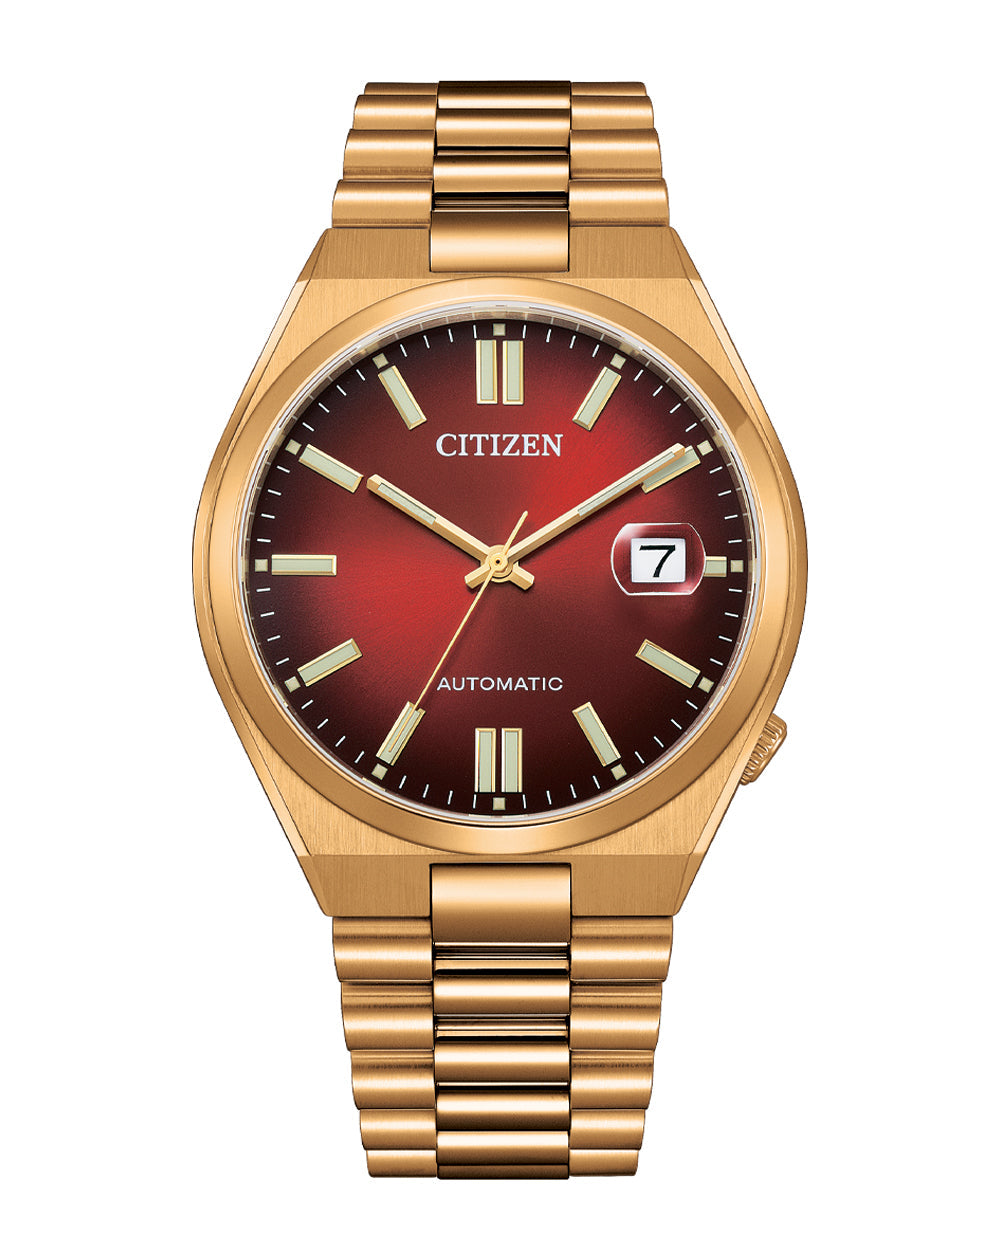 Citizen “TSUYOSA” Collection Burgundy Dial Watch